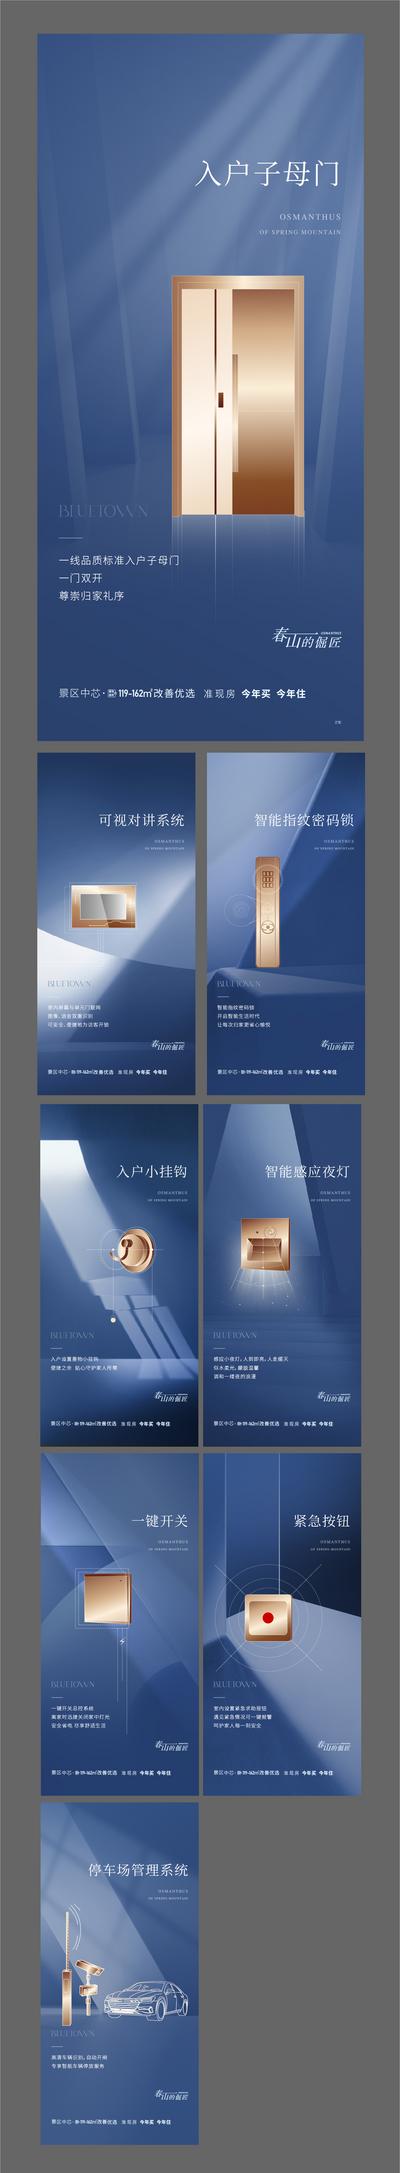 南门网 广告 海报 地产 精工 工艺 配套 蓝色 品质 价值点 系列 匠心 品质